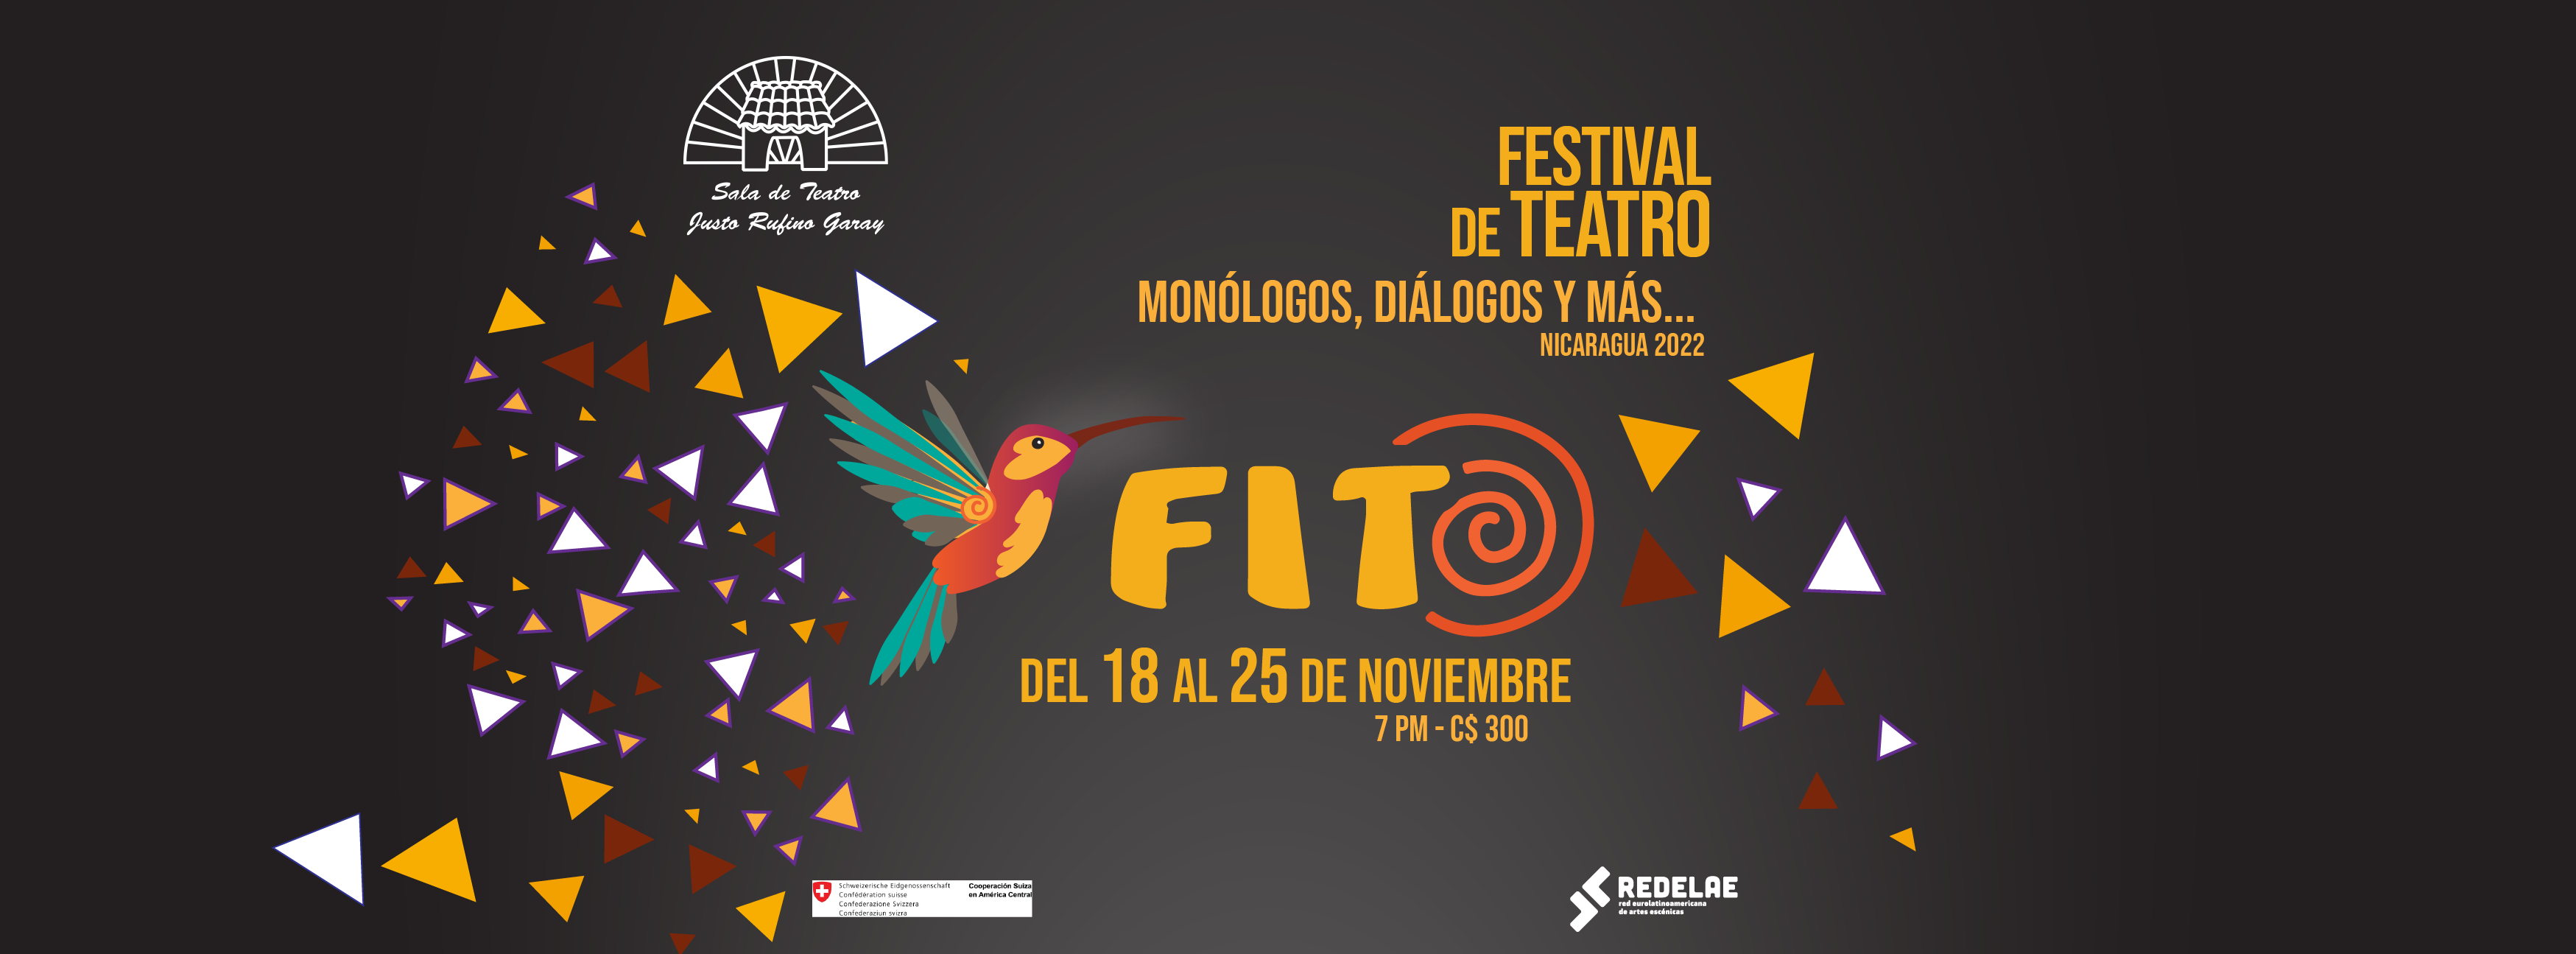 Festival de Teatro del 18 al 25 de noviembre